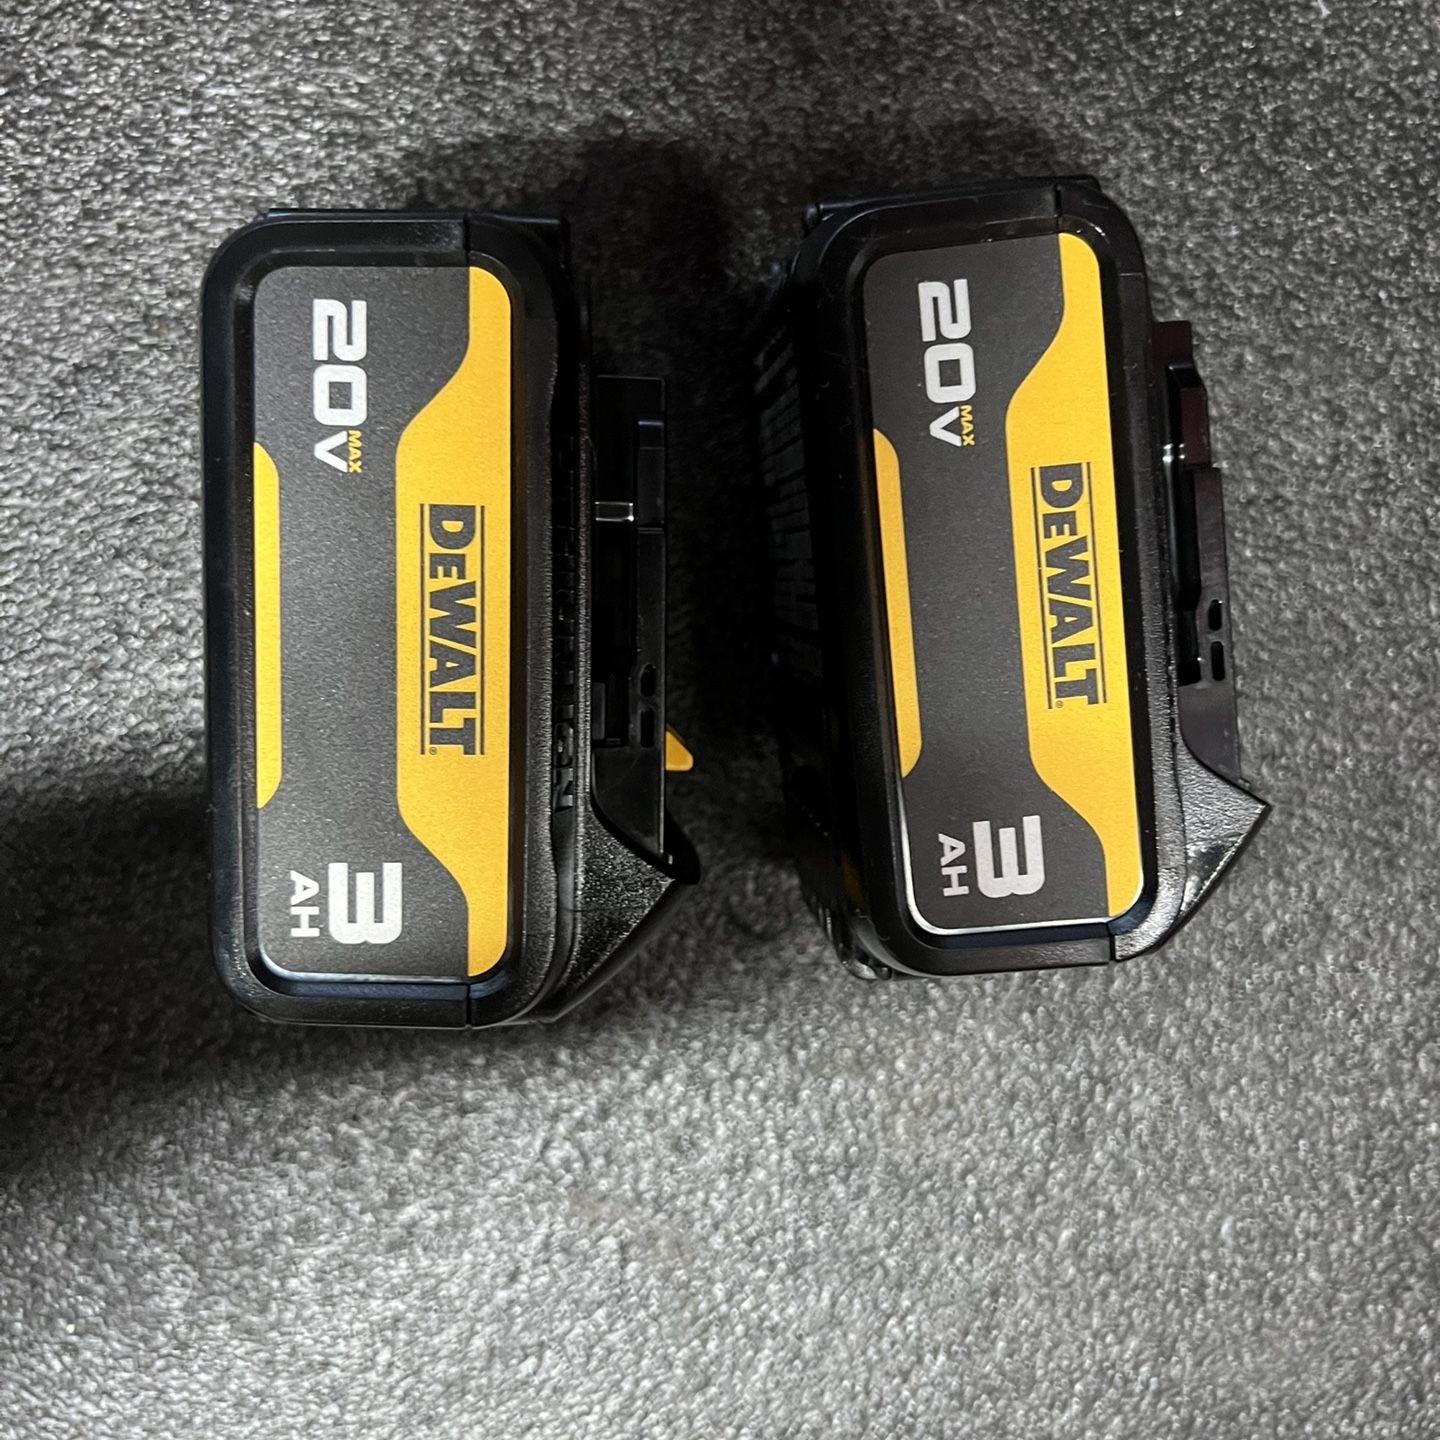 dewalt batteries 20v